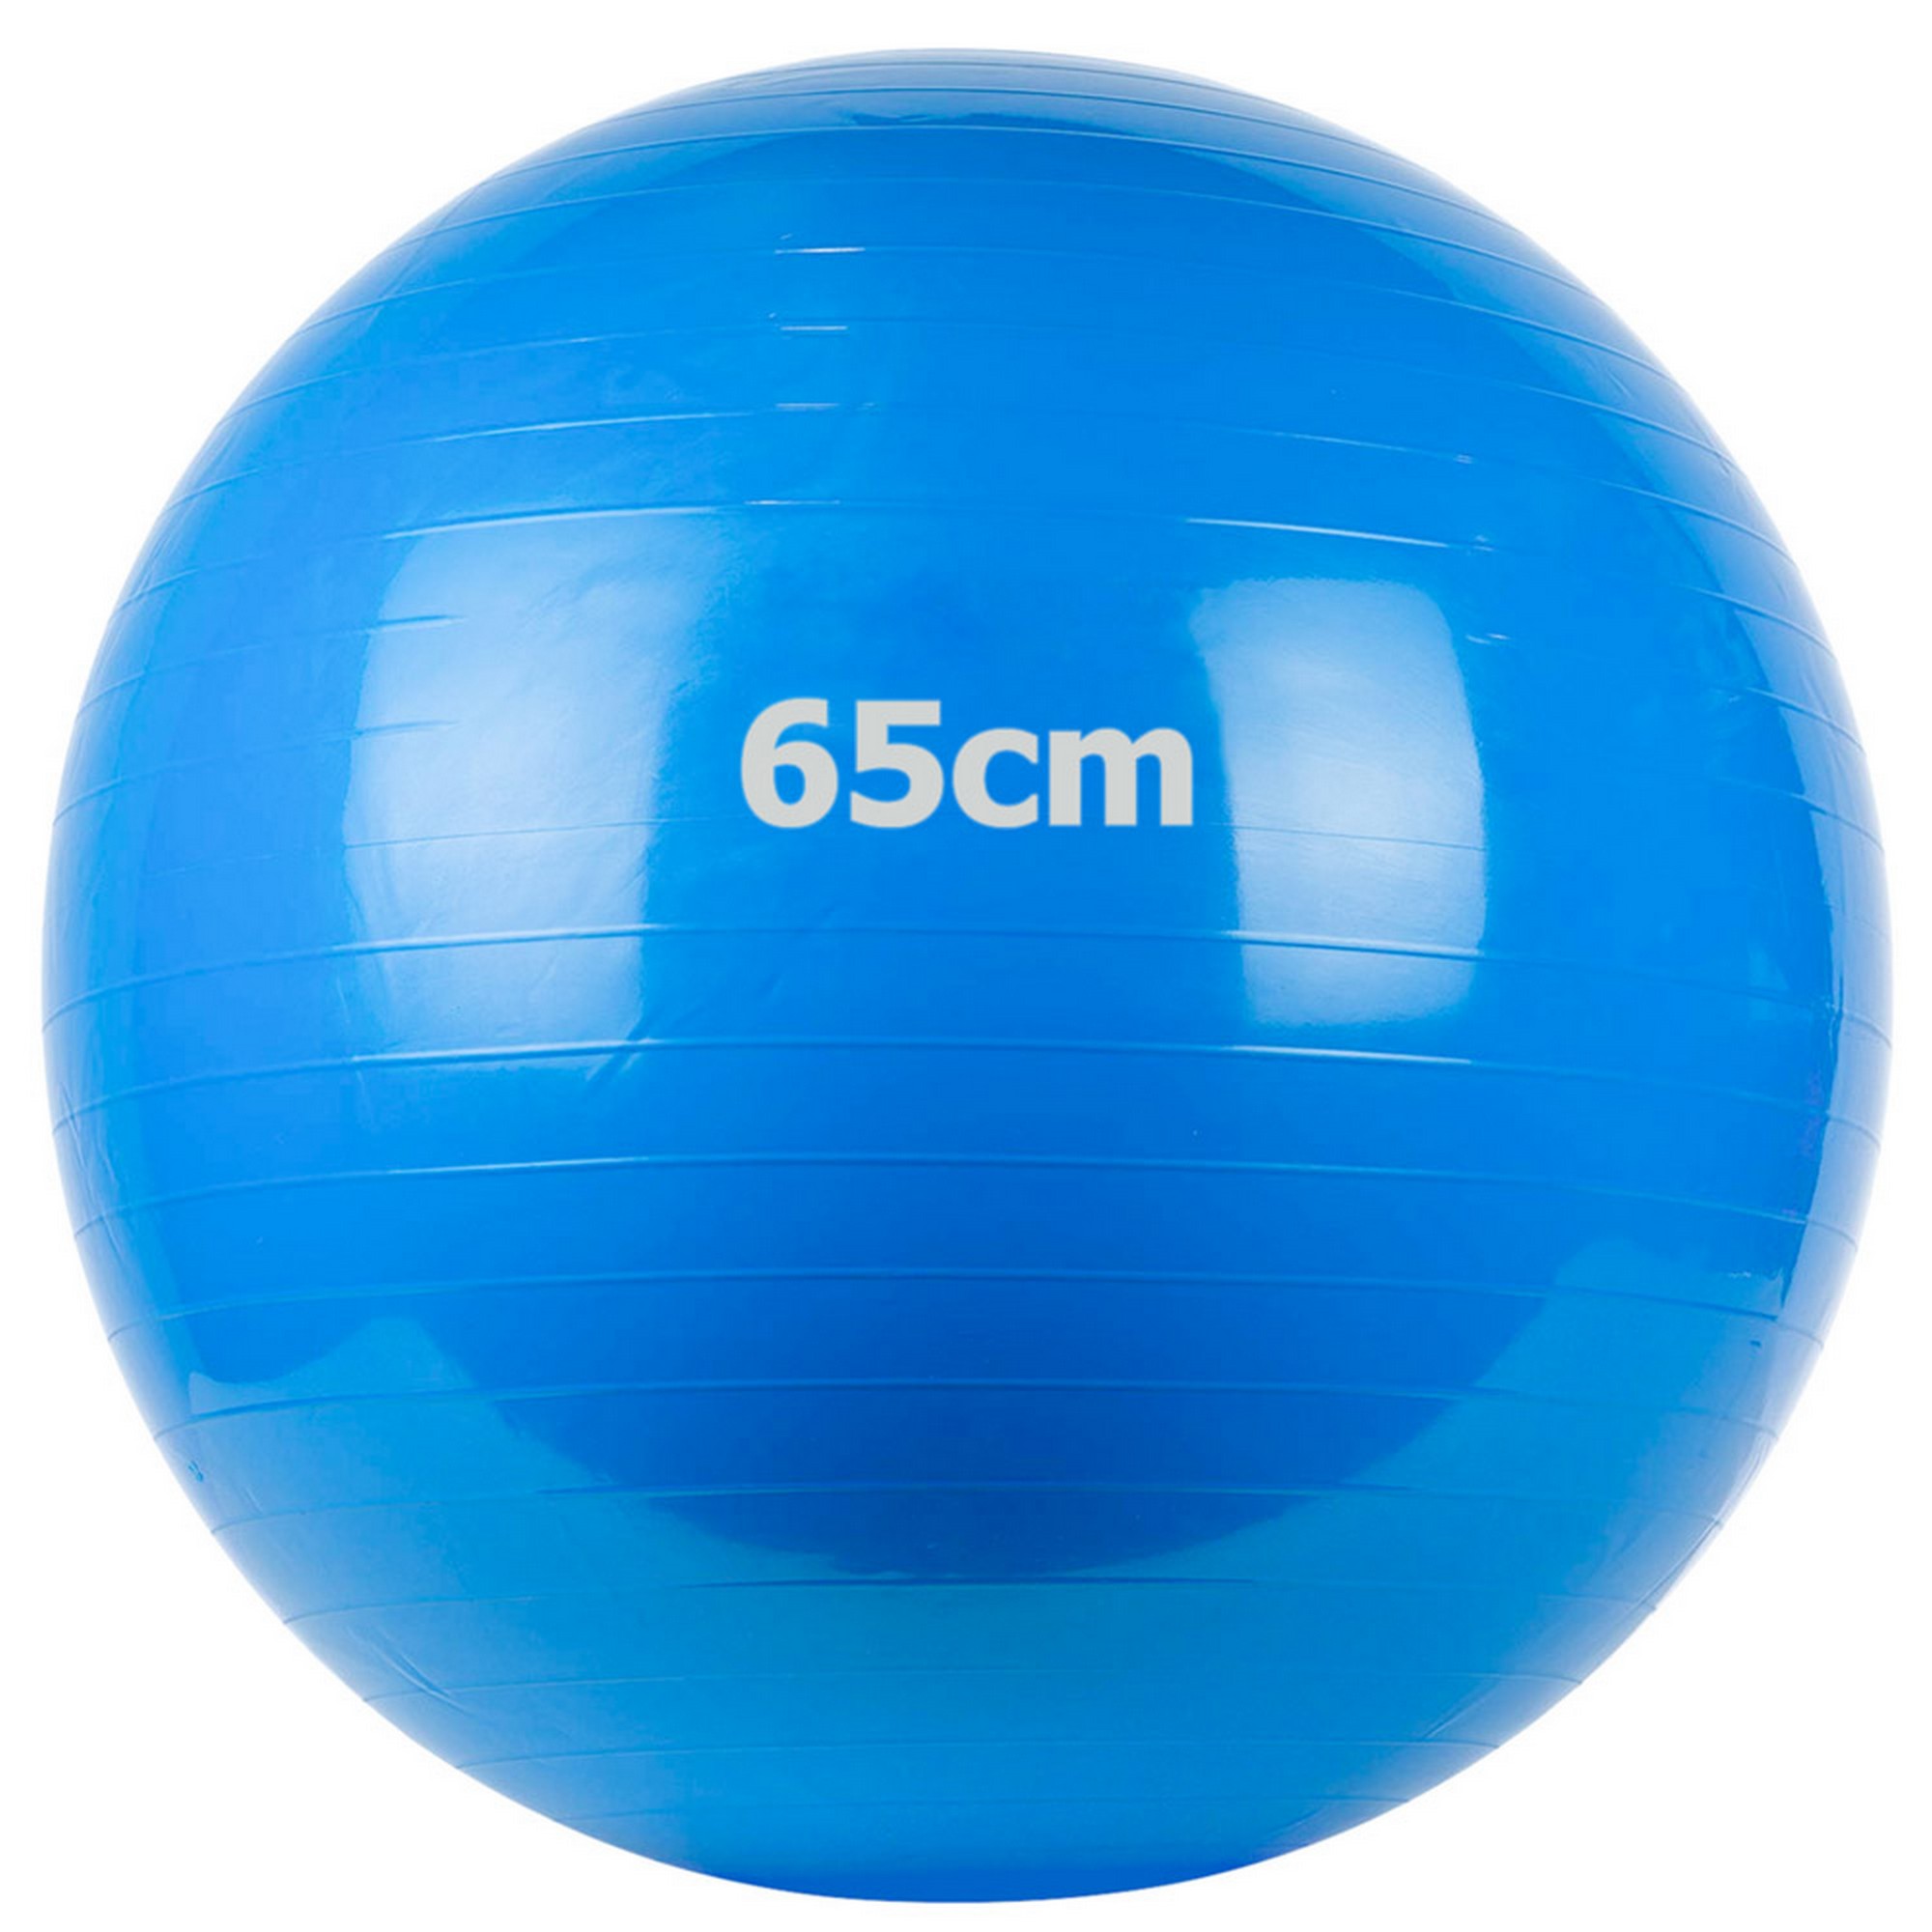 Купить Мяч гимнастический Gum Ball d65 см Sportex GM-65-2 синий,